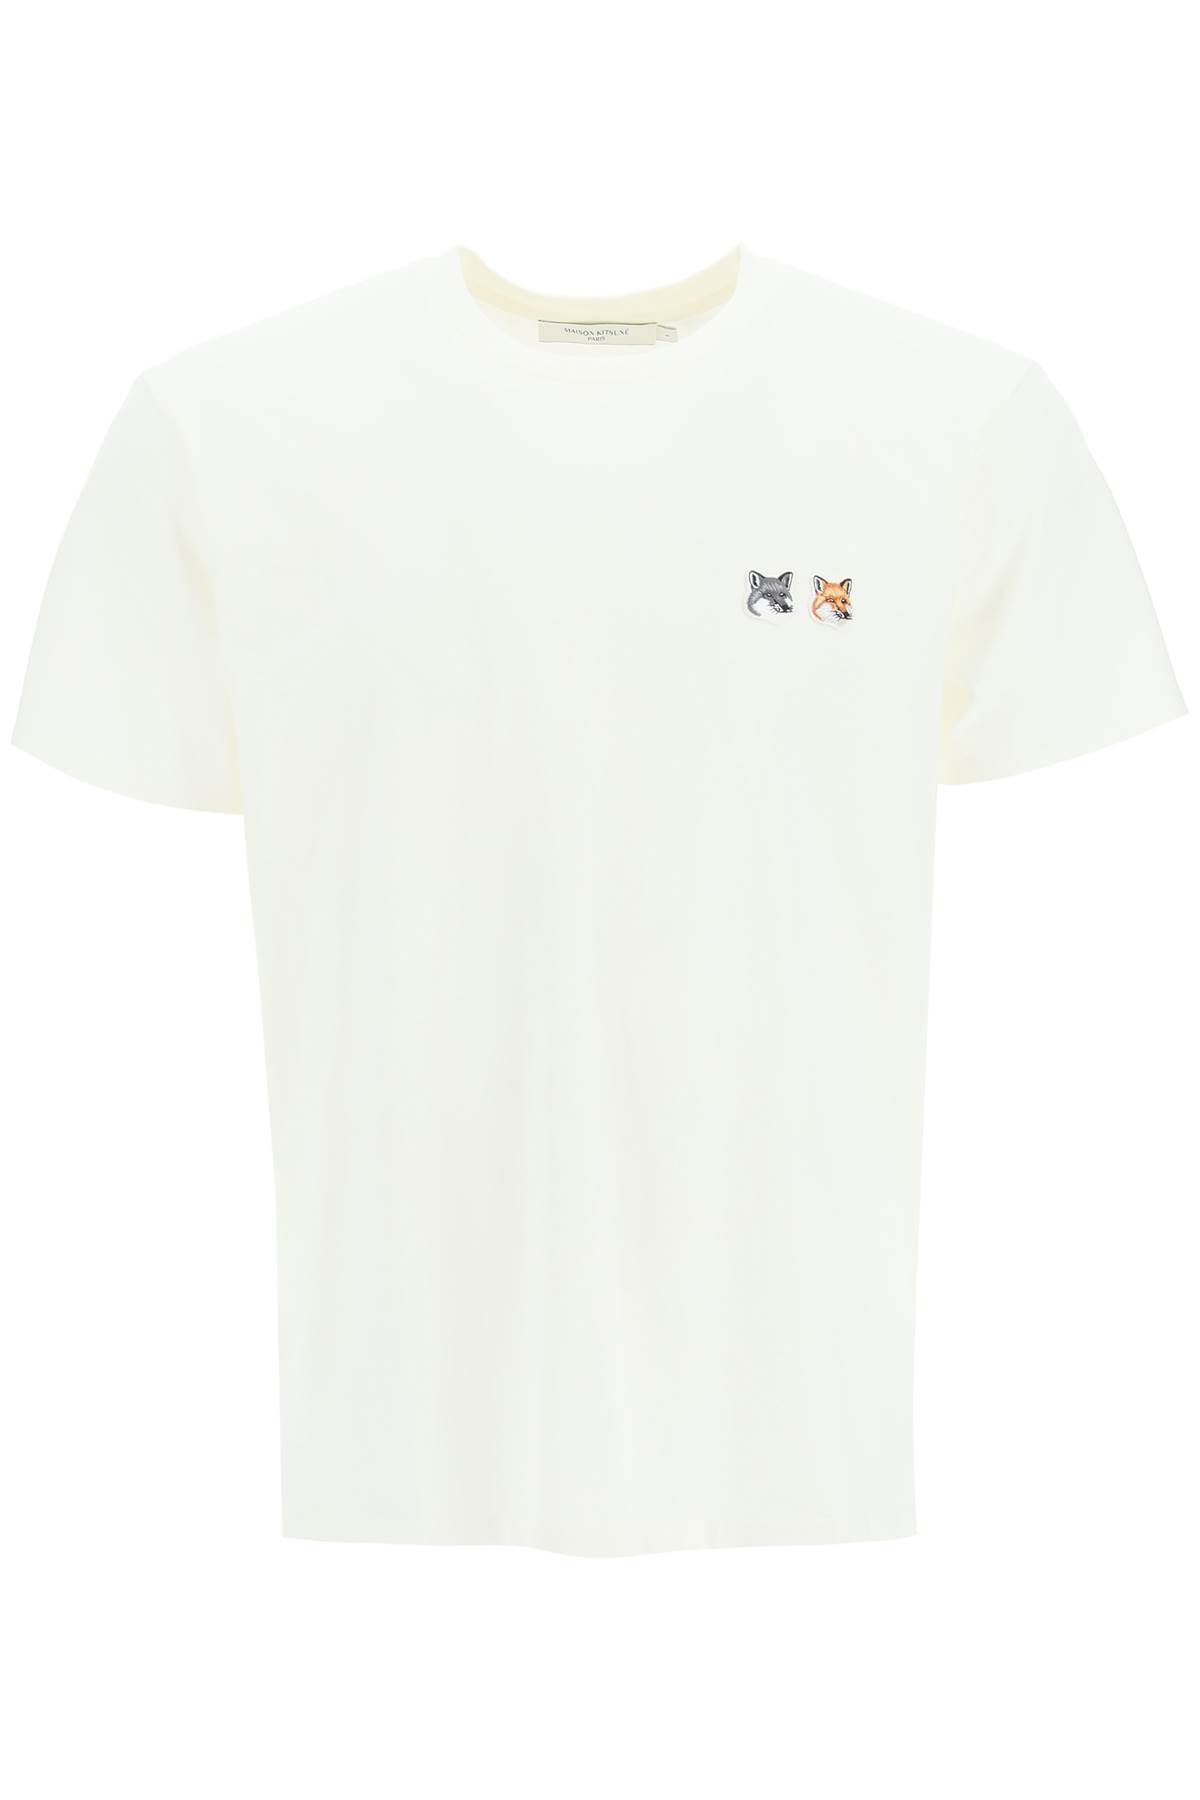 Maison Kitsuné T-shirt With Double Fox Patch